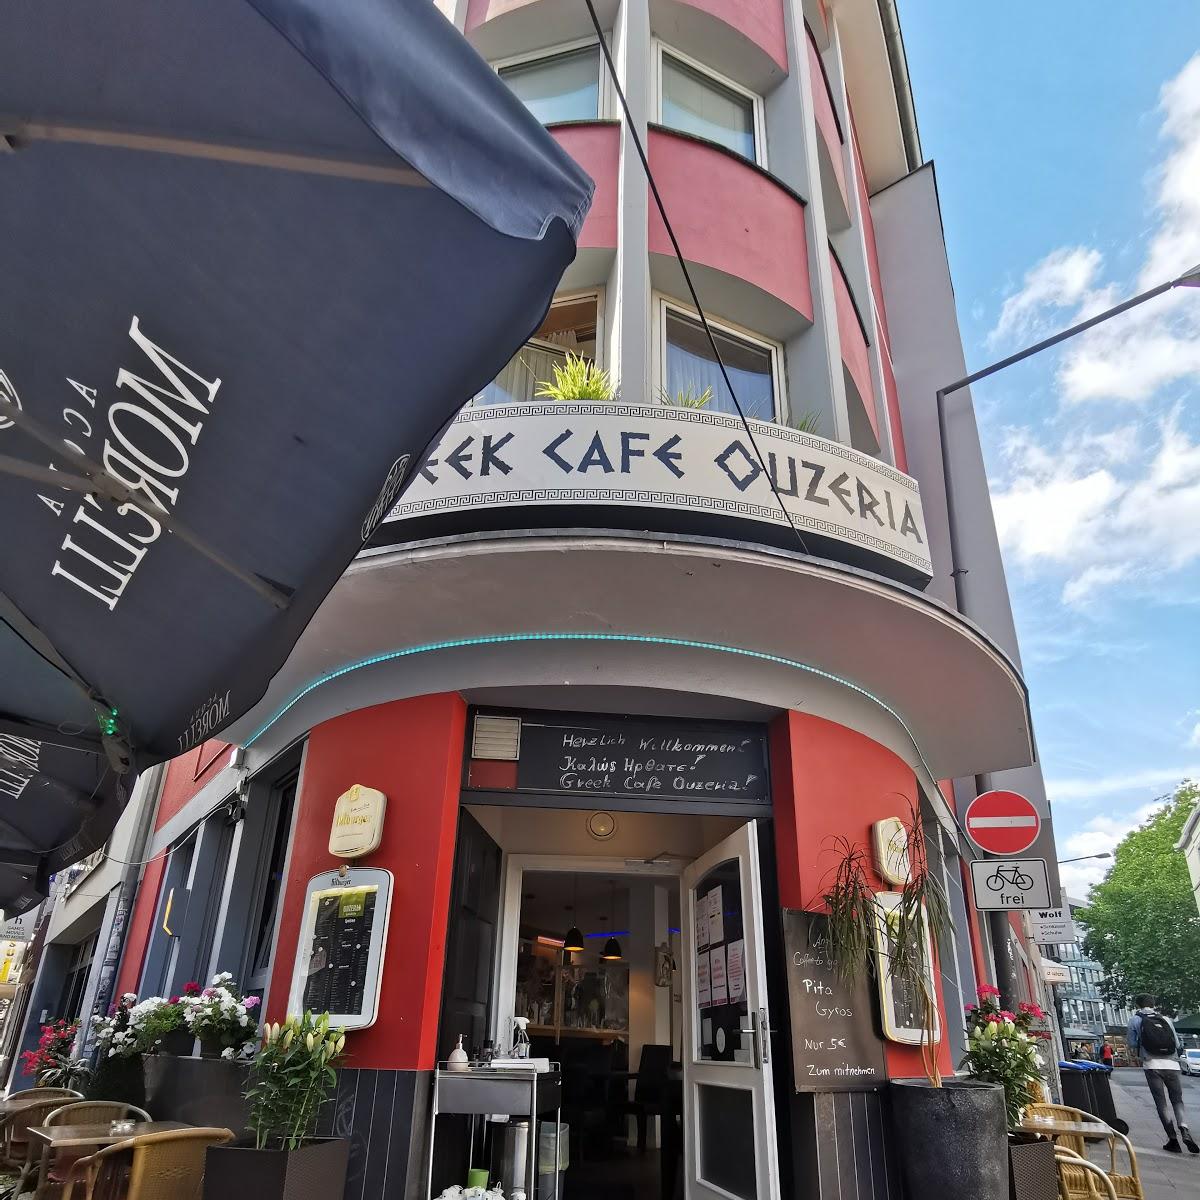 Greek Cafe Ouzeria